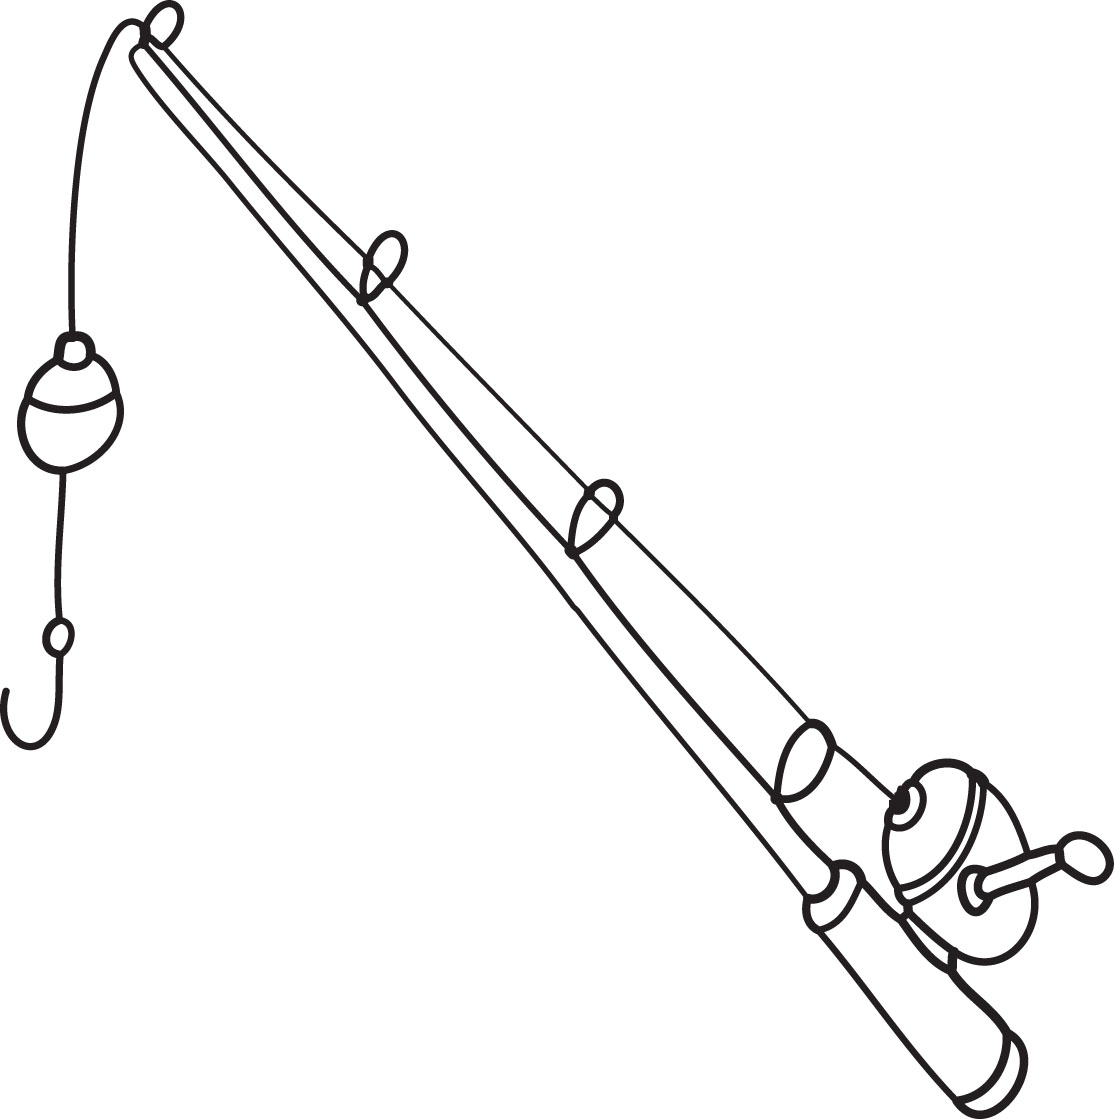 Cartoon Fishing Rod - Clipart library